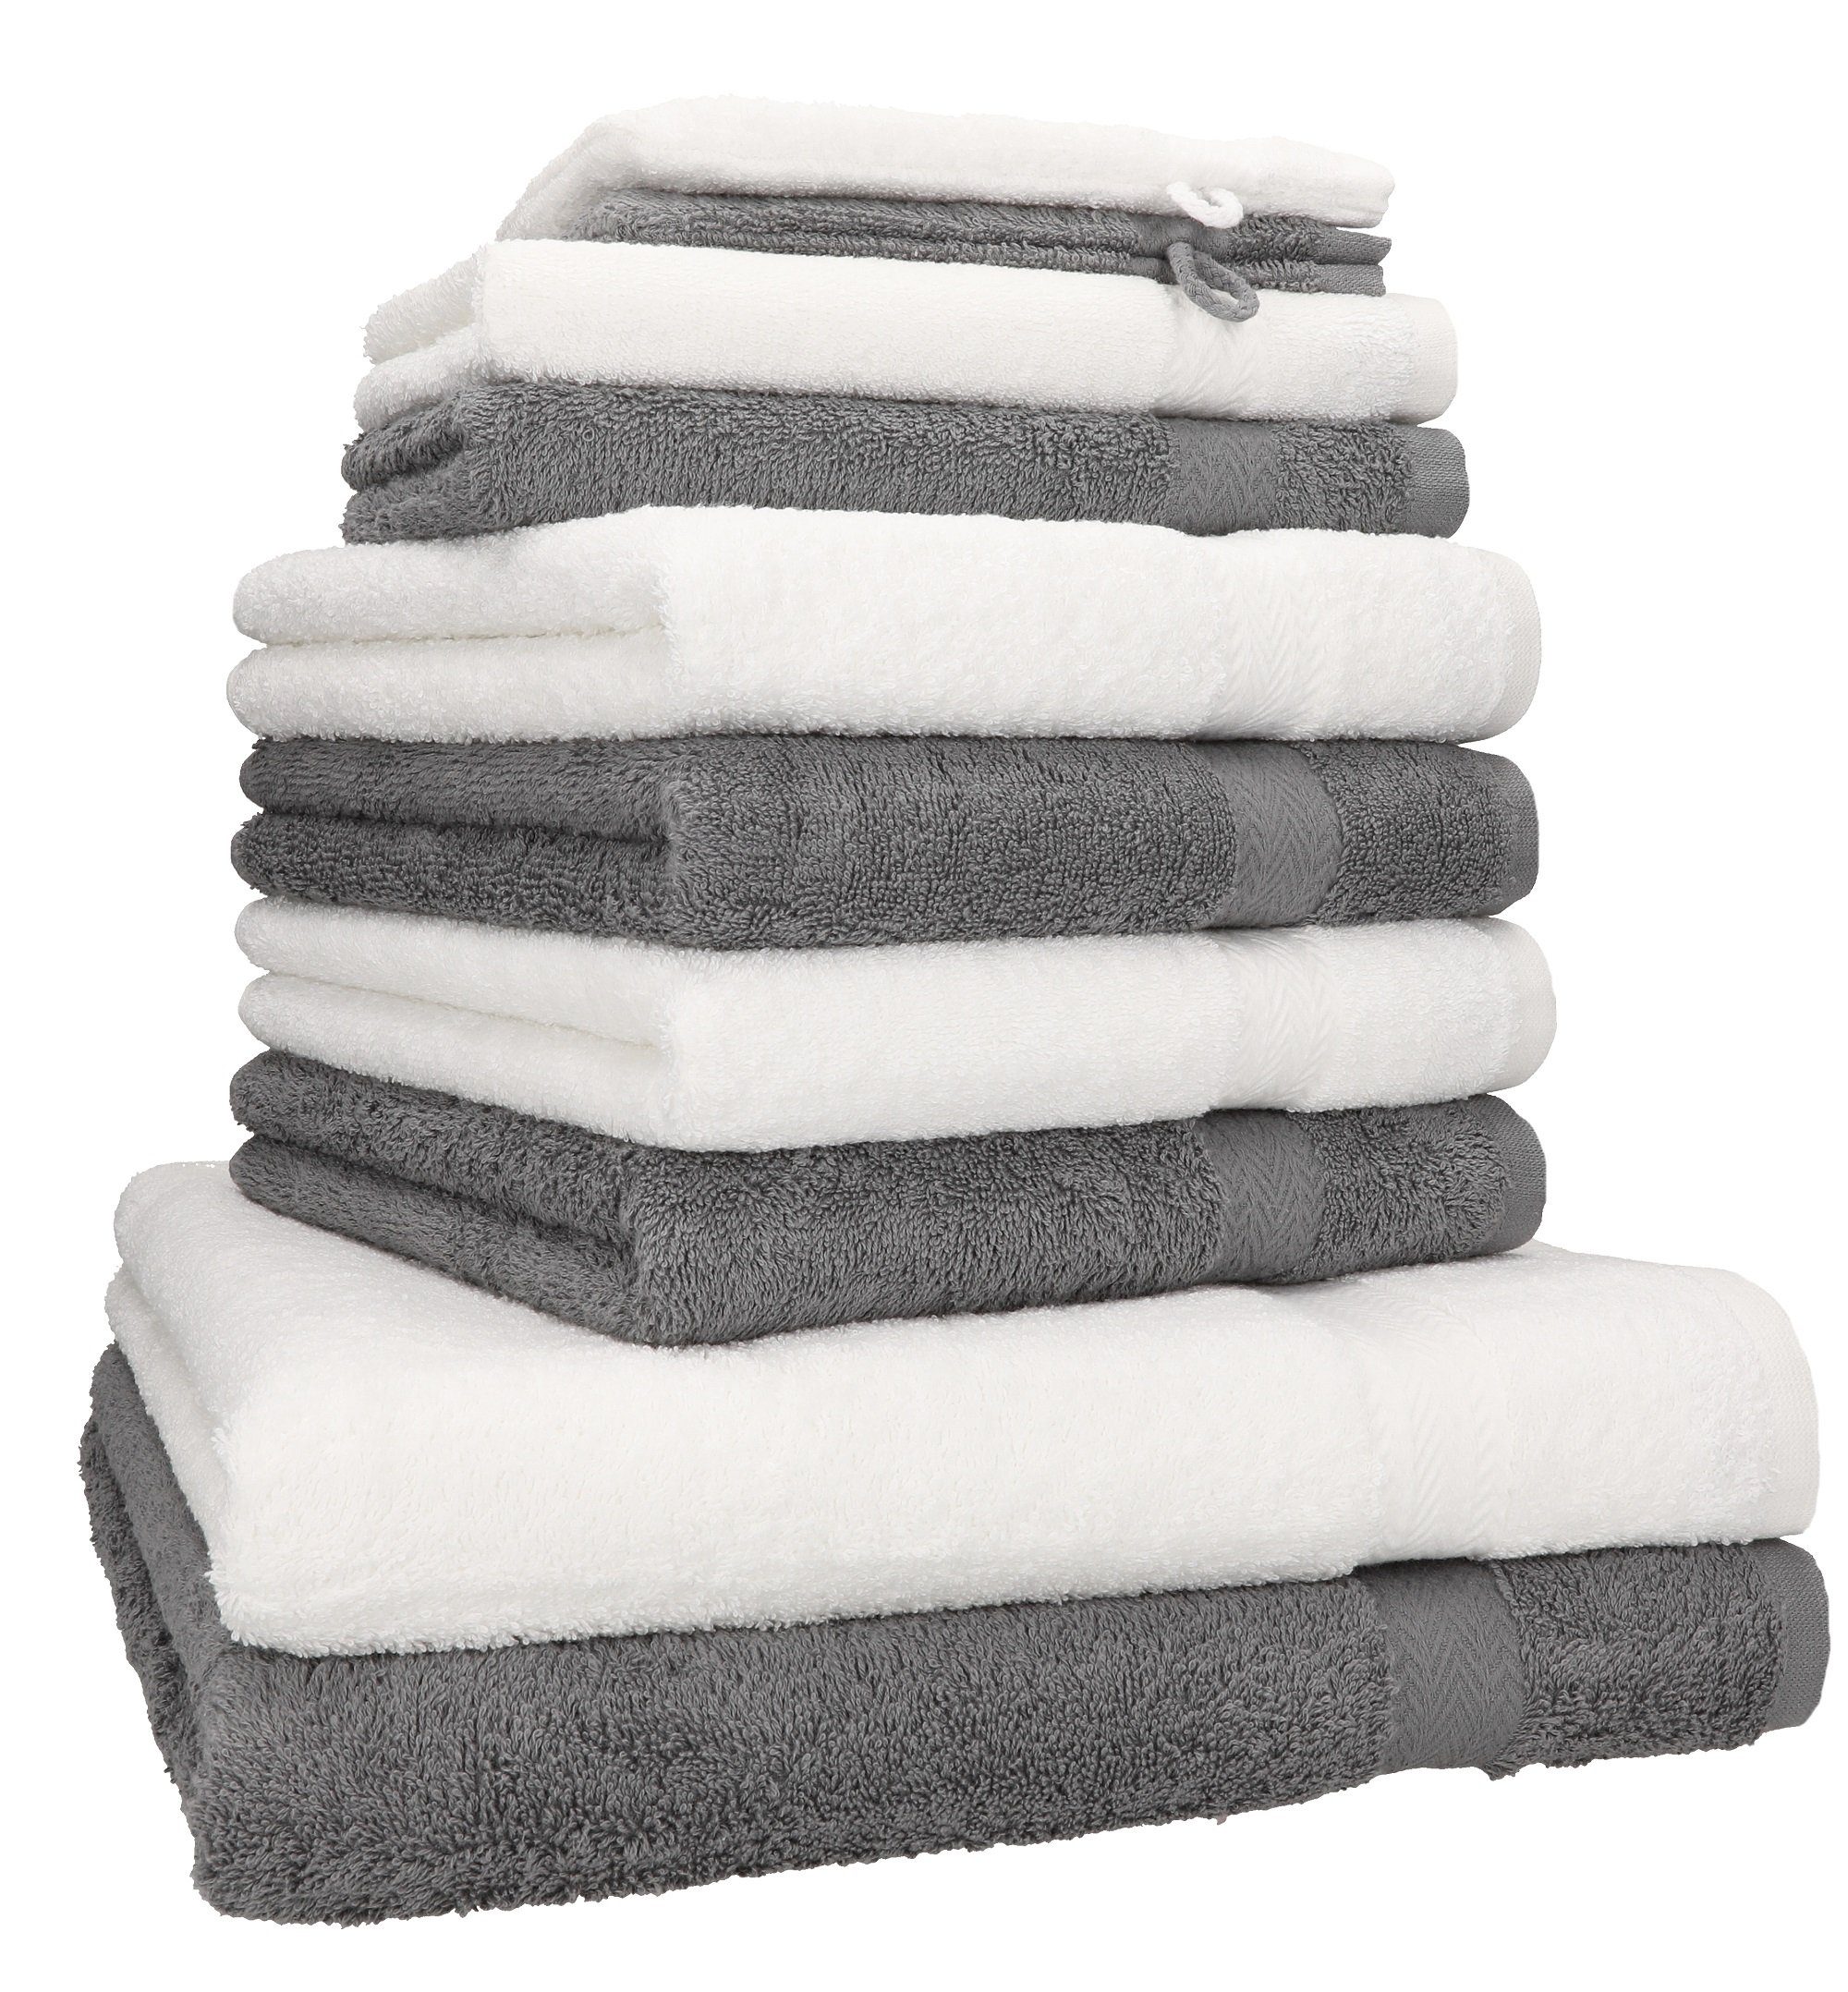 Betz Handtuch Set 10-TLG. Handtuch-Set Premium Farbe Anthrazit & Weiß, 100% Baumwolle, (10-tlg)